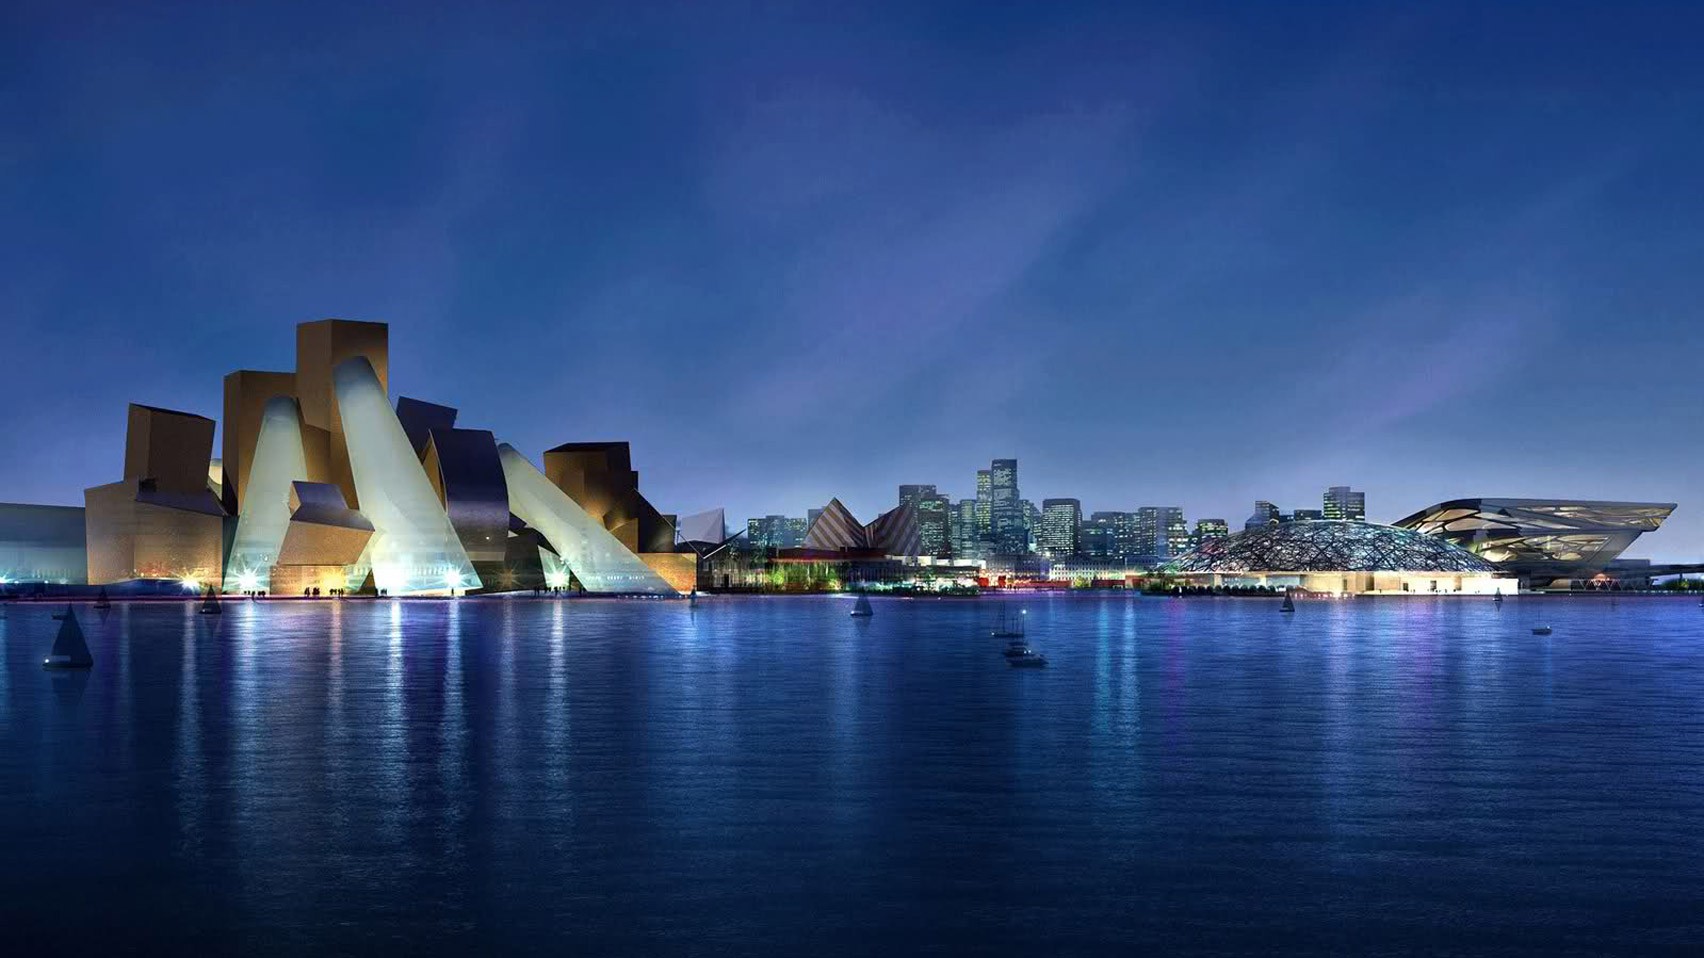 Anunciado há 12 anos, museu de Frank Gehry em Abu Dhabi sairá do papel (Foto: Divulgação)